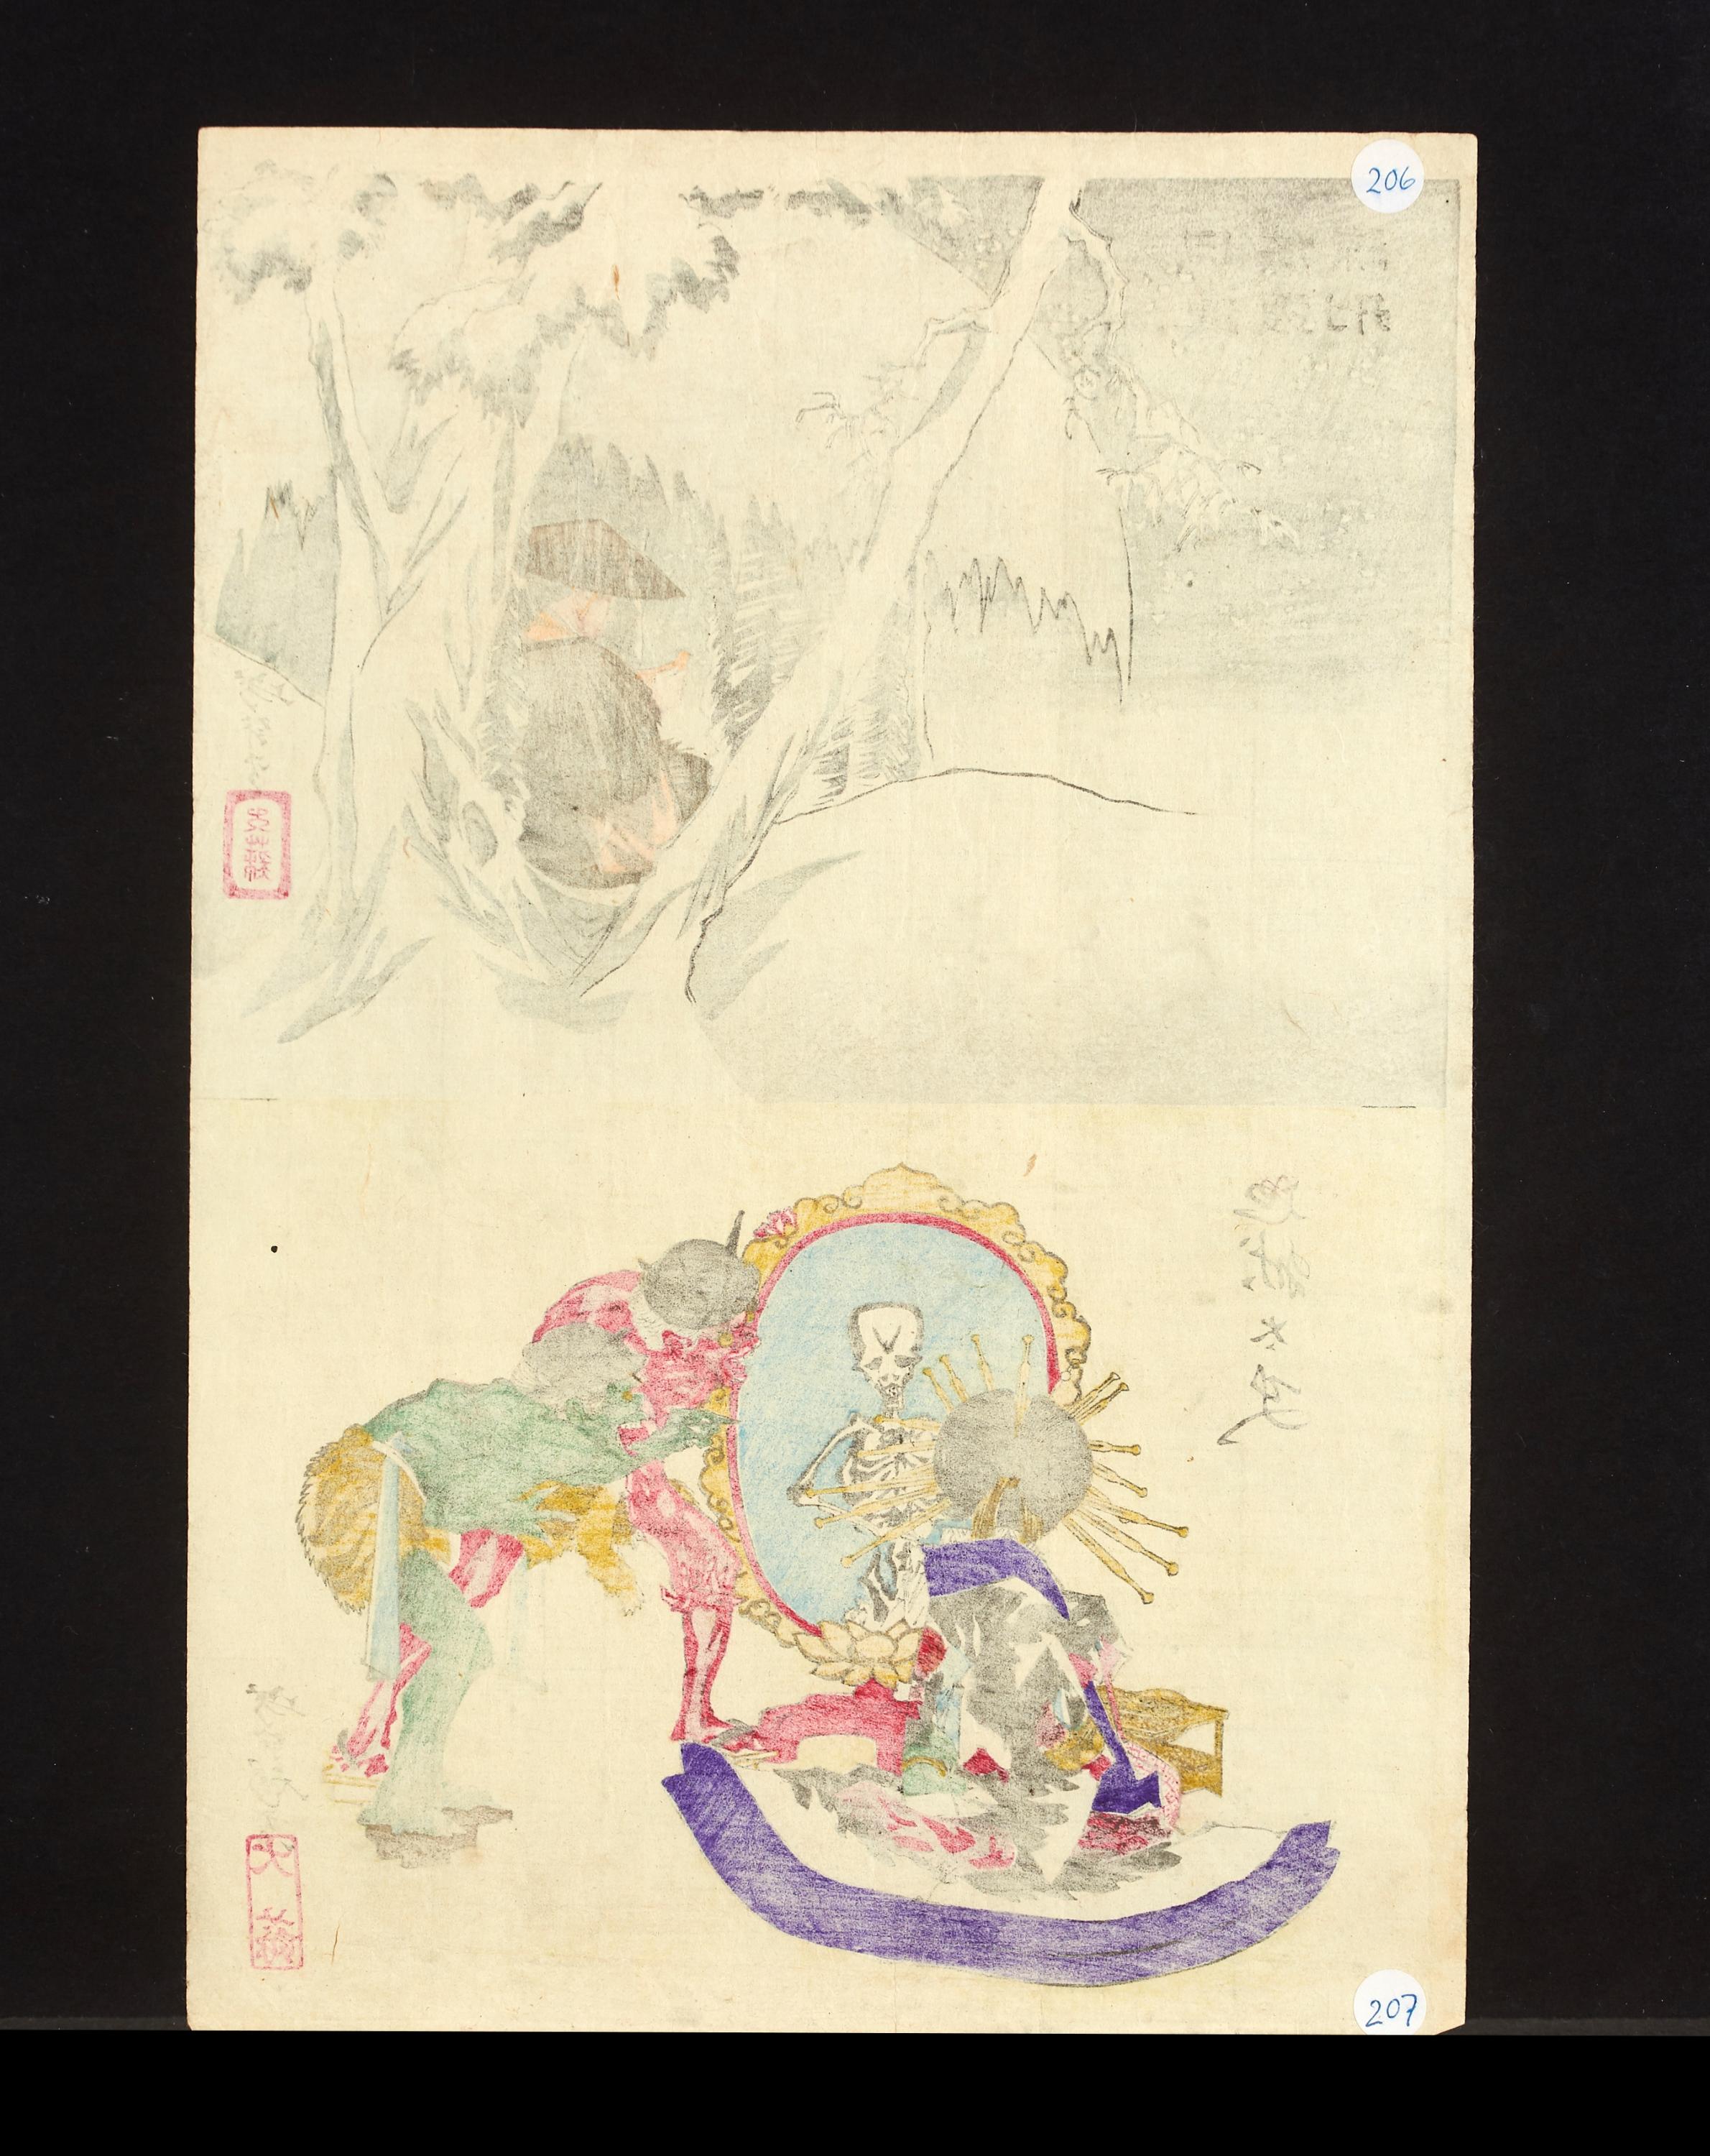 Paper Tsukioka Yoshitoshi, Original Set of Six '6' 19th Century Japanese Prints